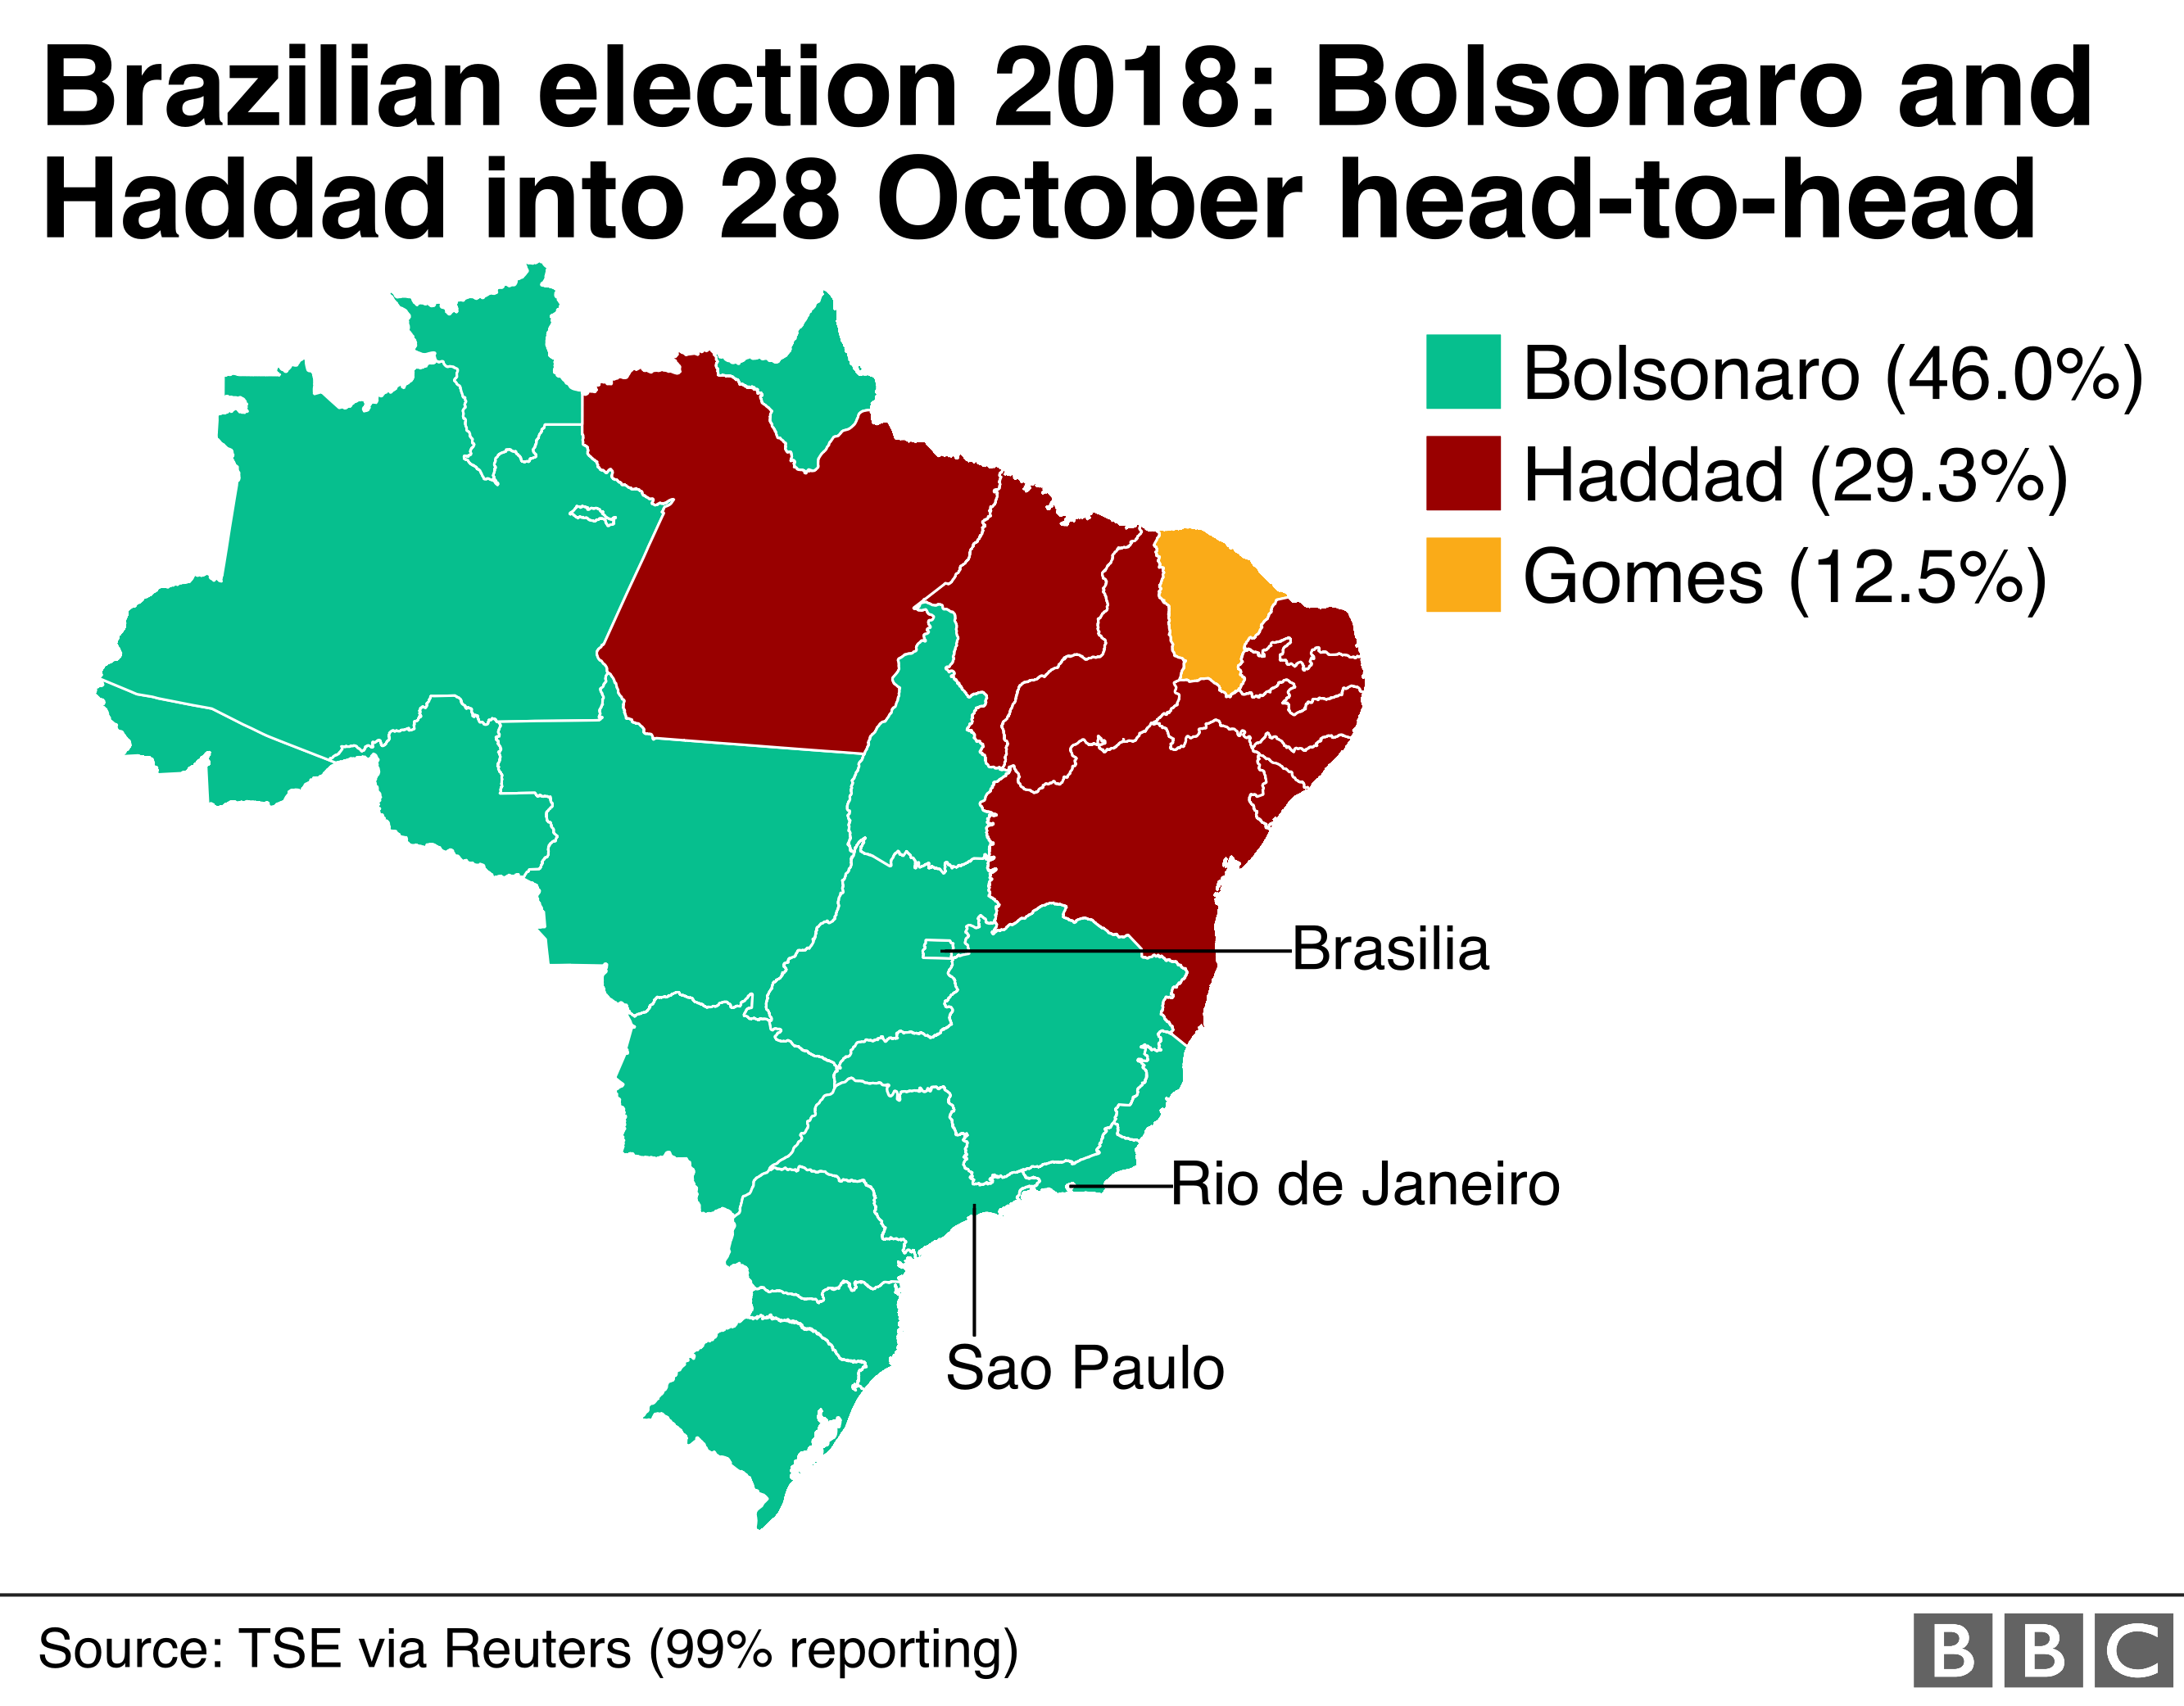 Хаддад победил в девяти штатах на северо-востоке Бразилии, в то время как Болсонаро доминировал над остальной частью страны. Гомес также выиграл свой родной штат Сеара